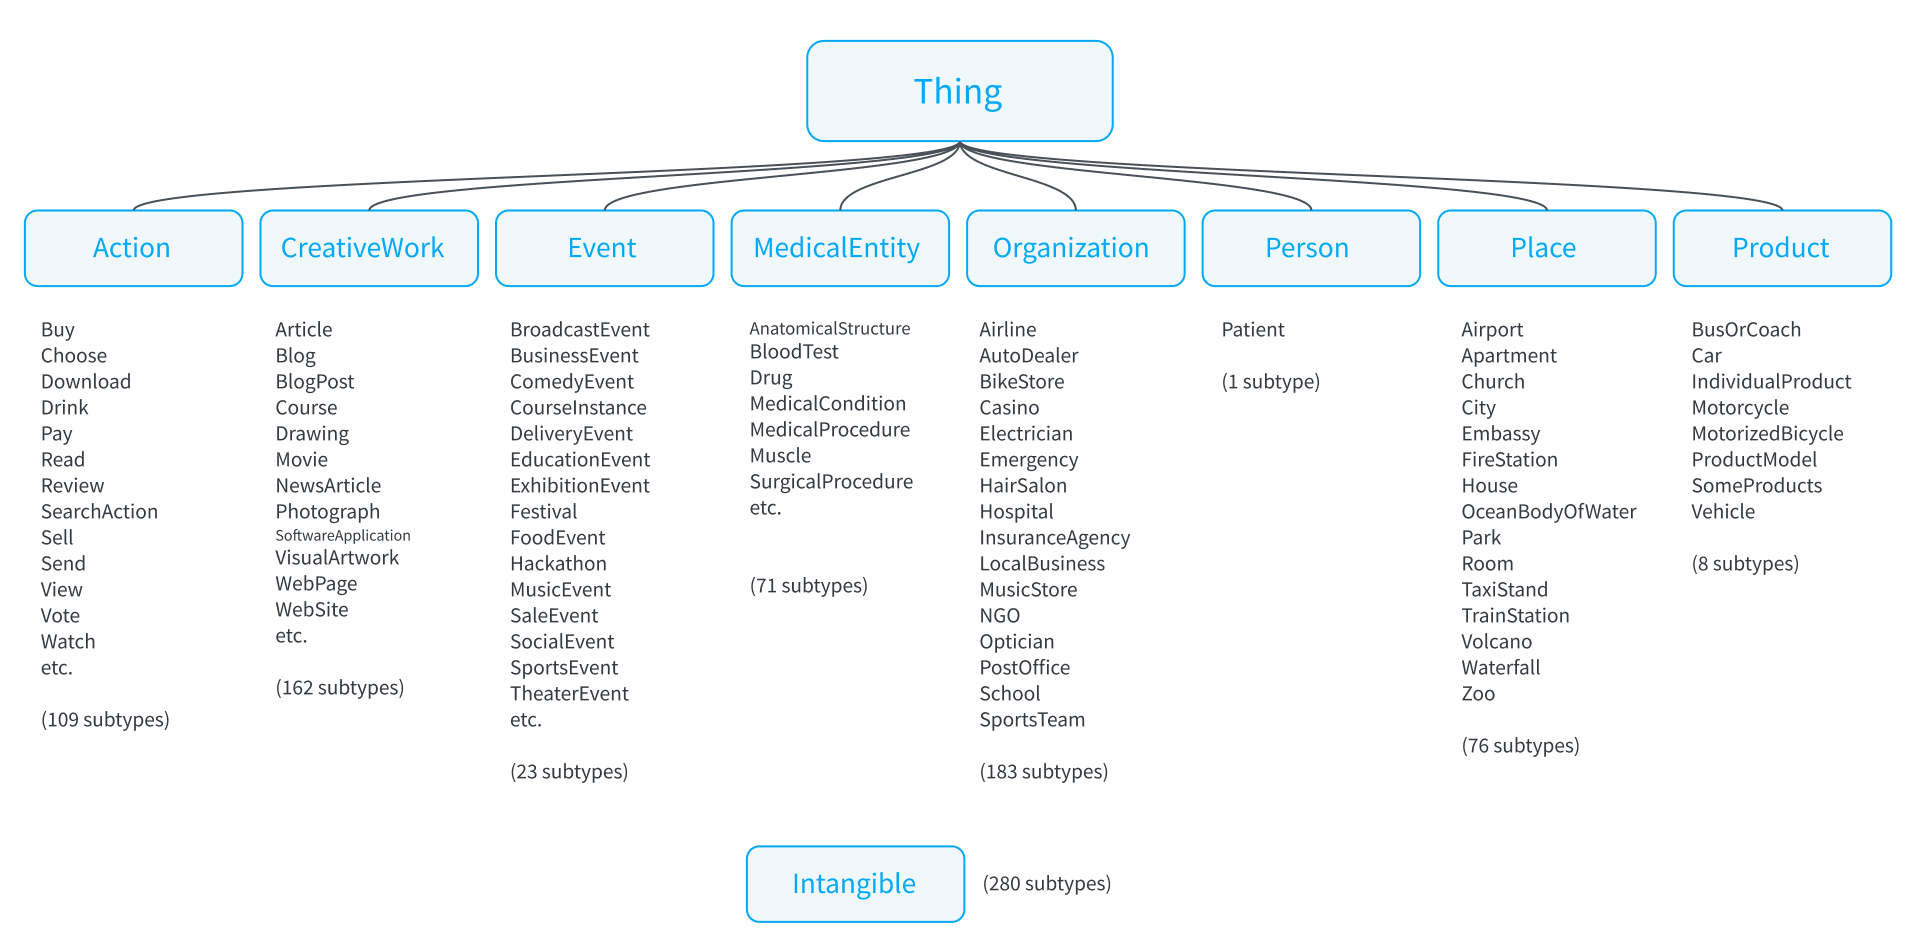 schema.org main types